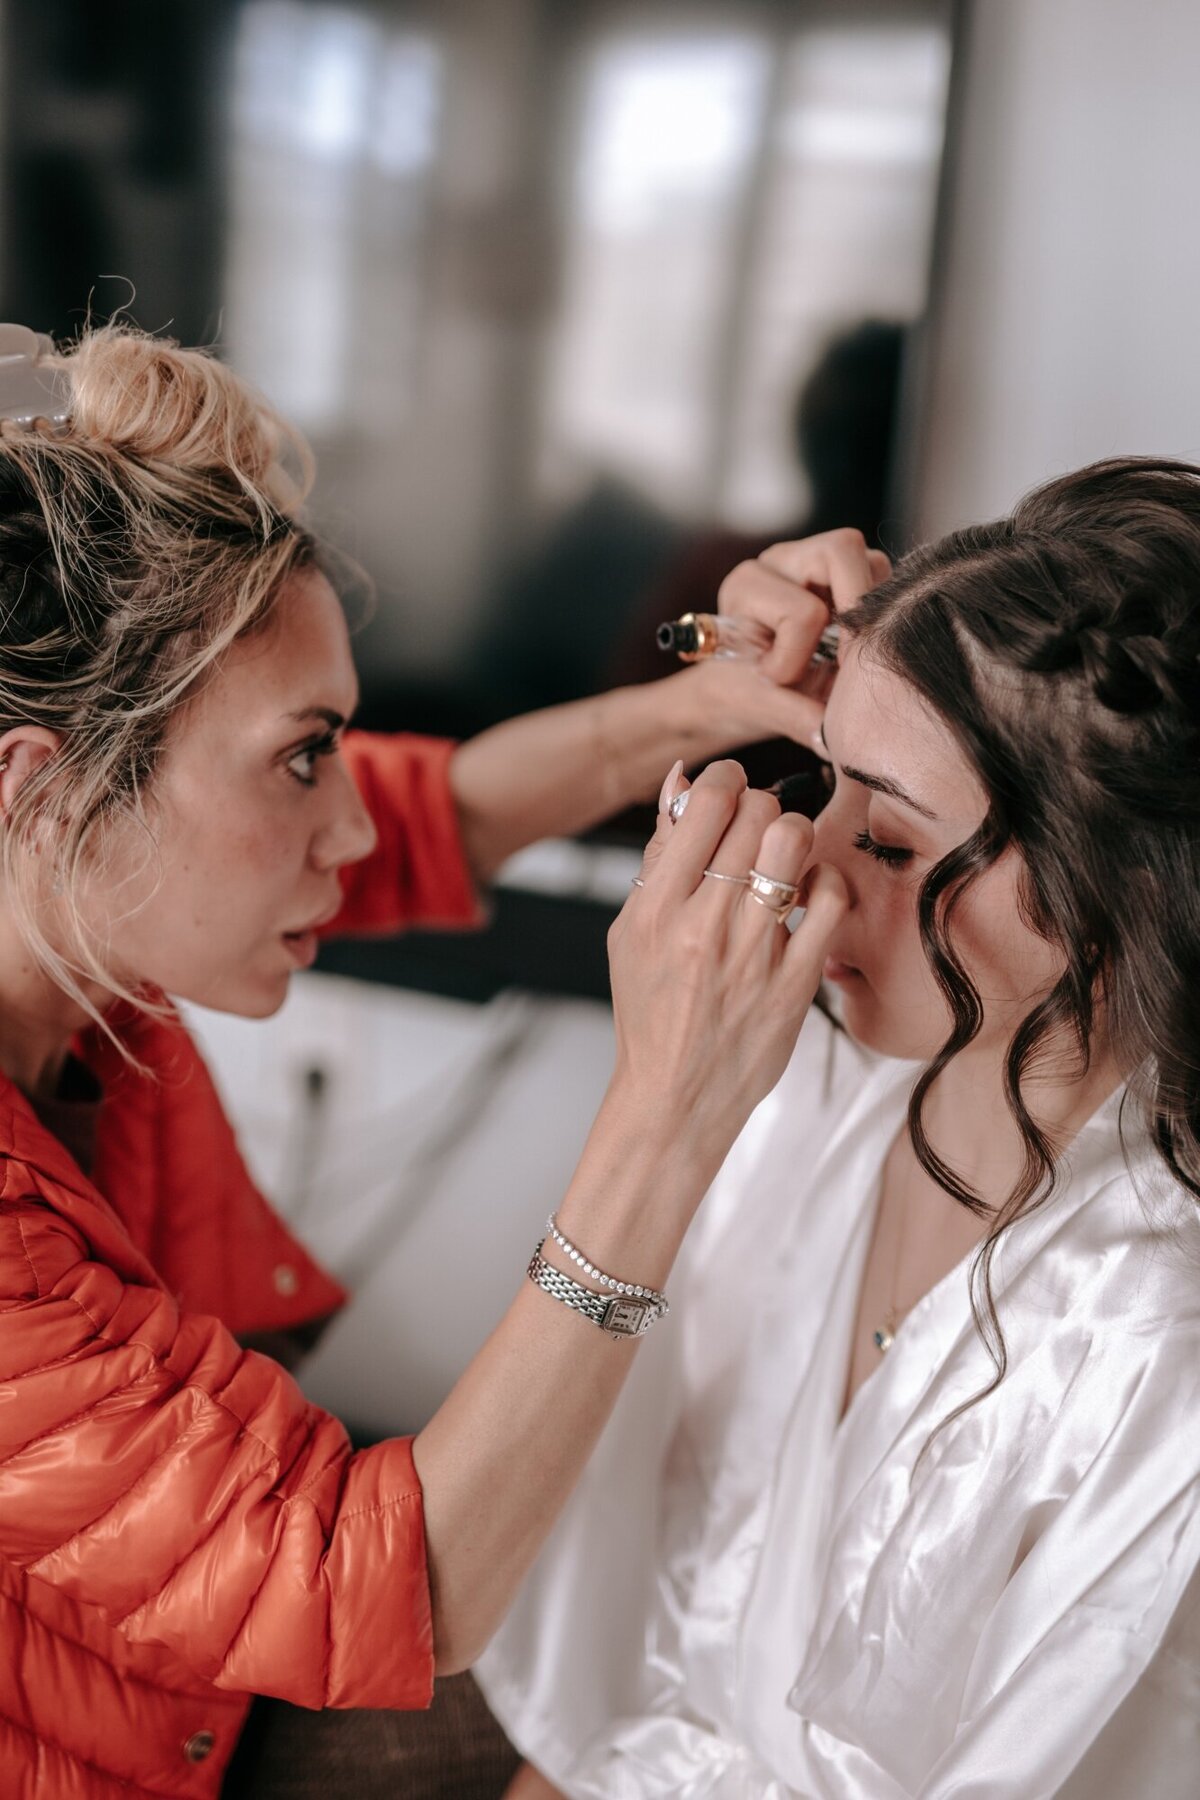 Makeup artist applying brides makeup.